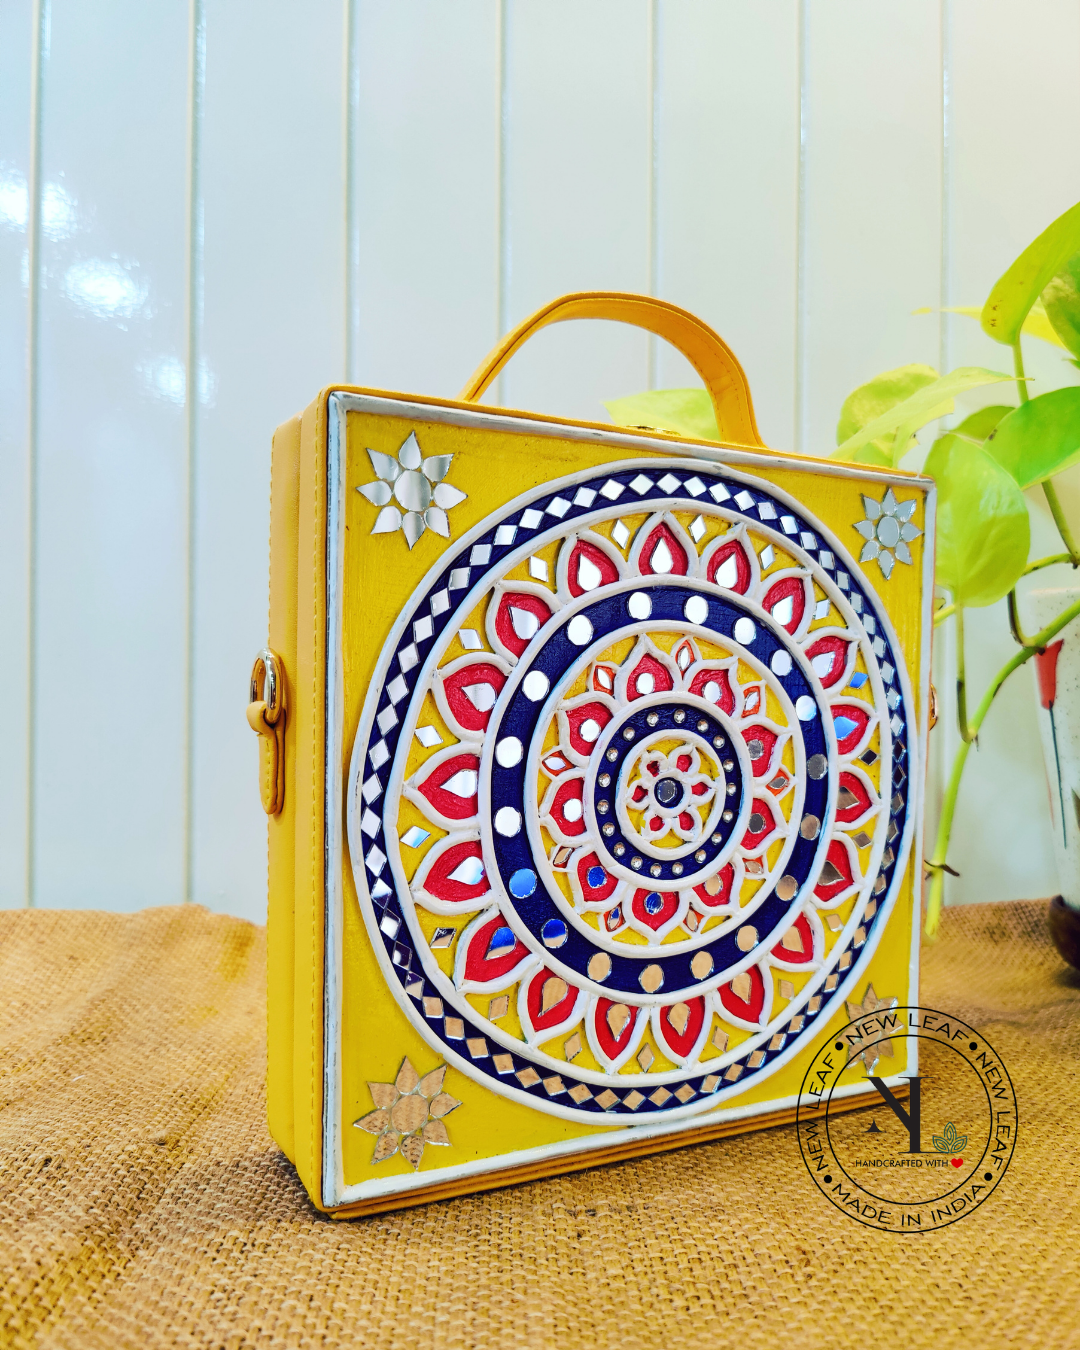 Concentric circles Lippan Art Handcrafted Box Bag